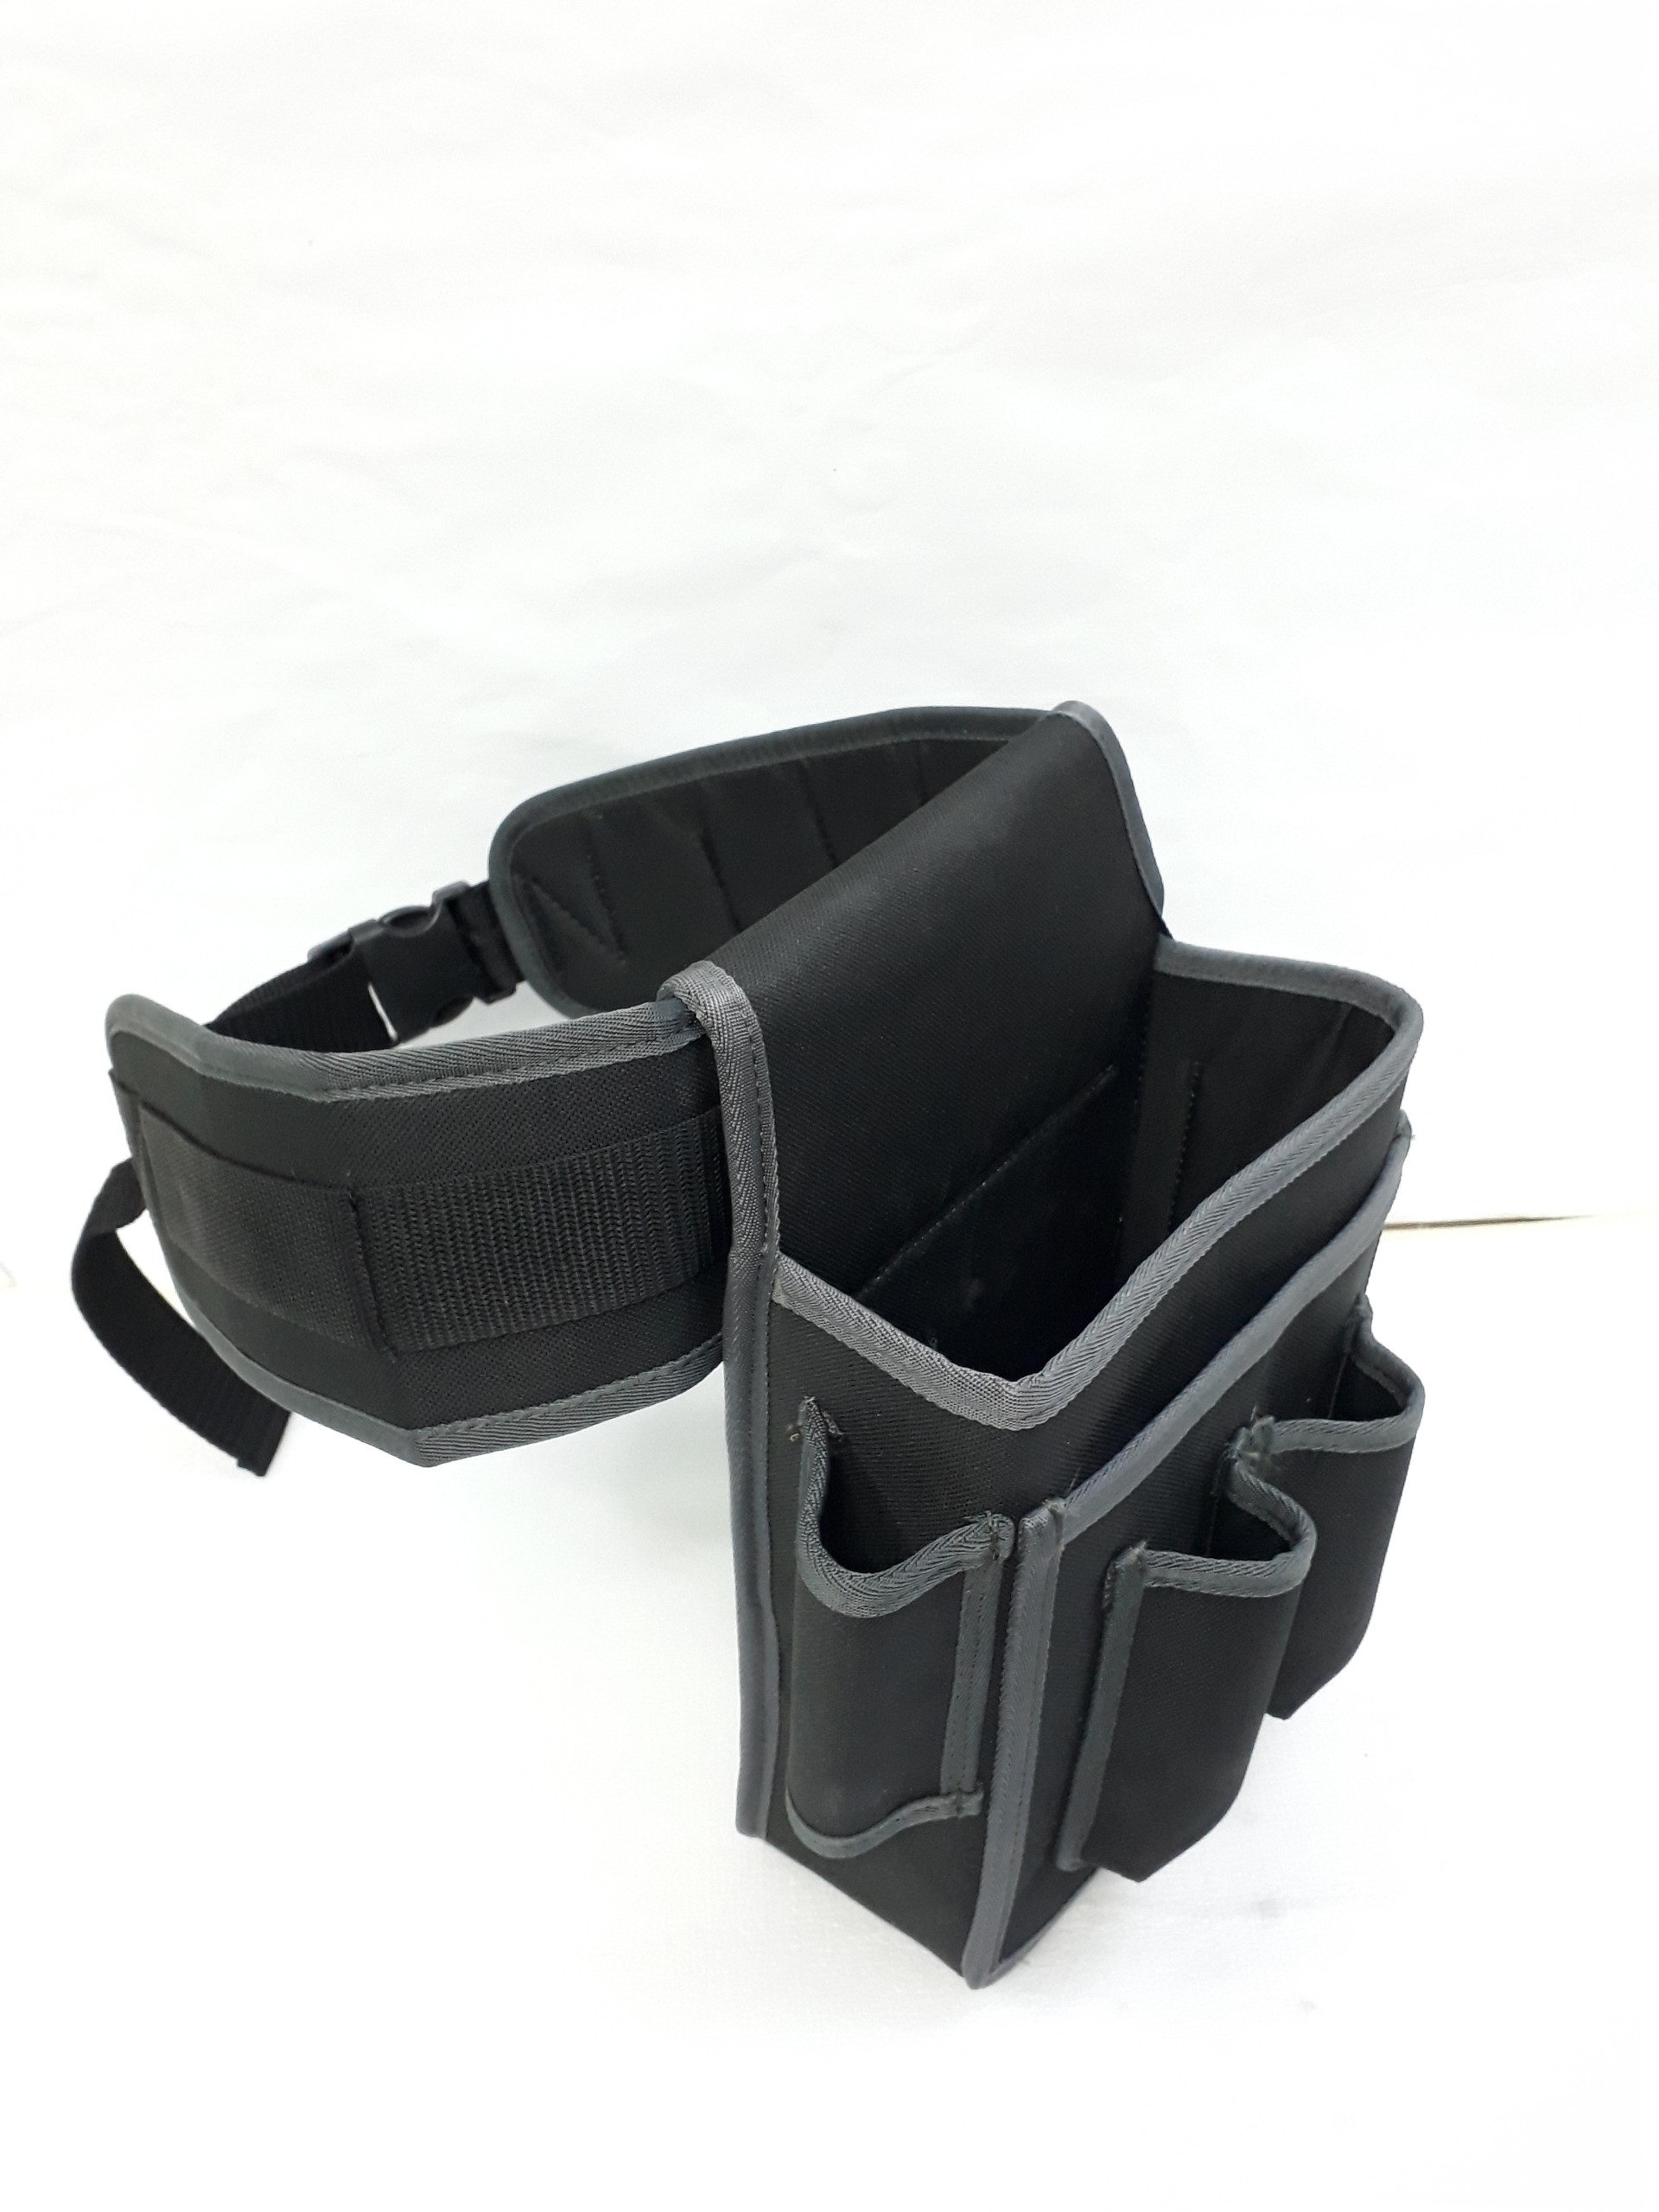 Túi đựng đồ nghề đeo hông TGTB-001GREY cao cấp